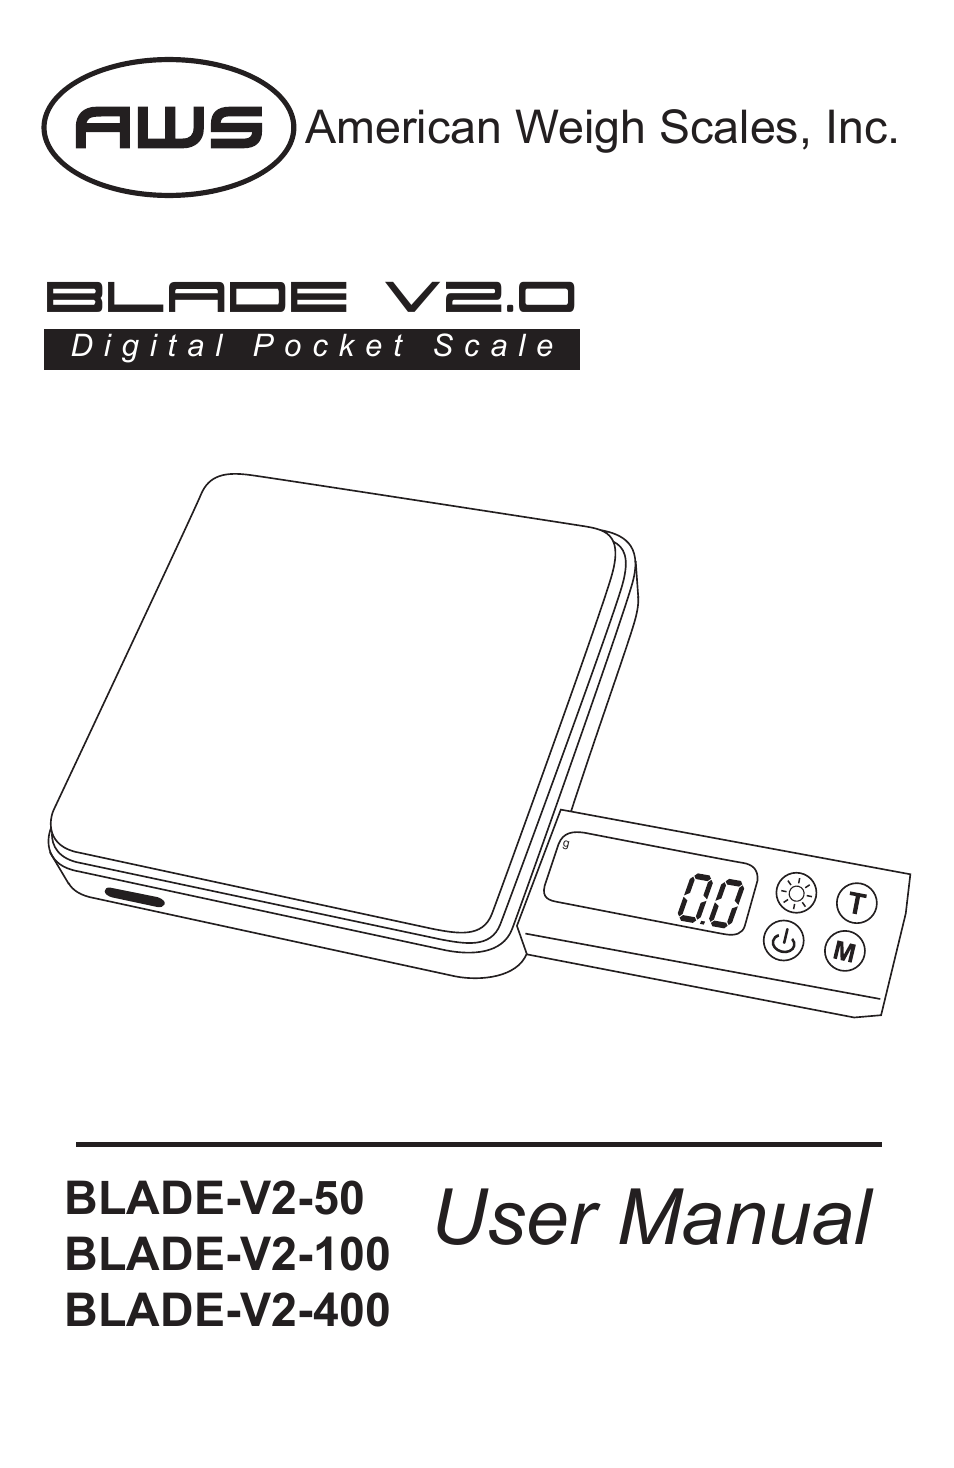 Blade-V2-50